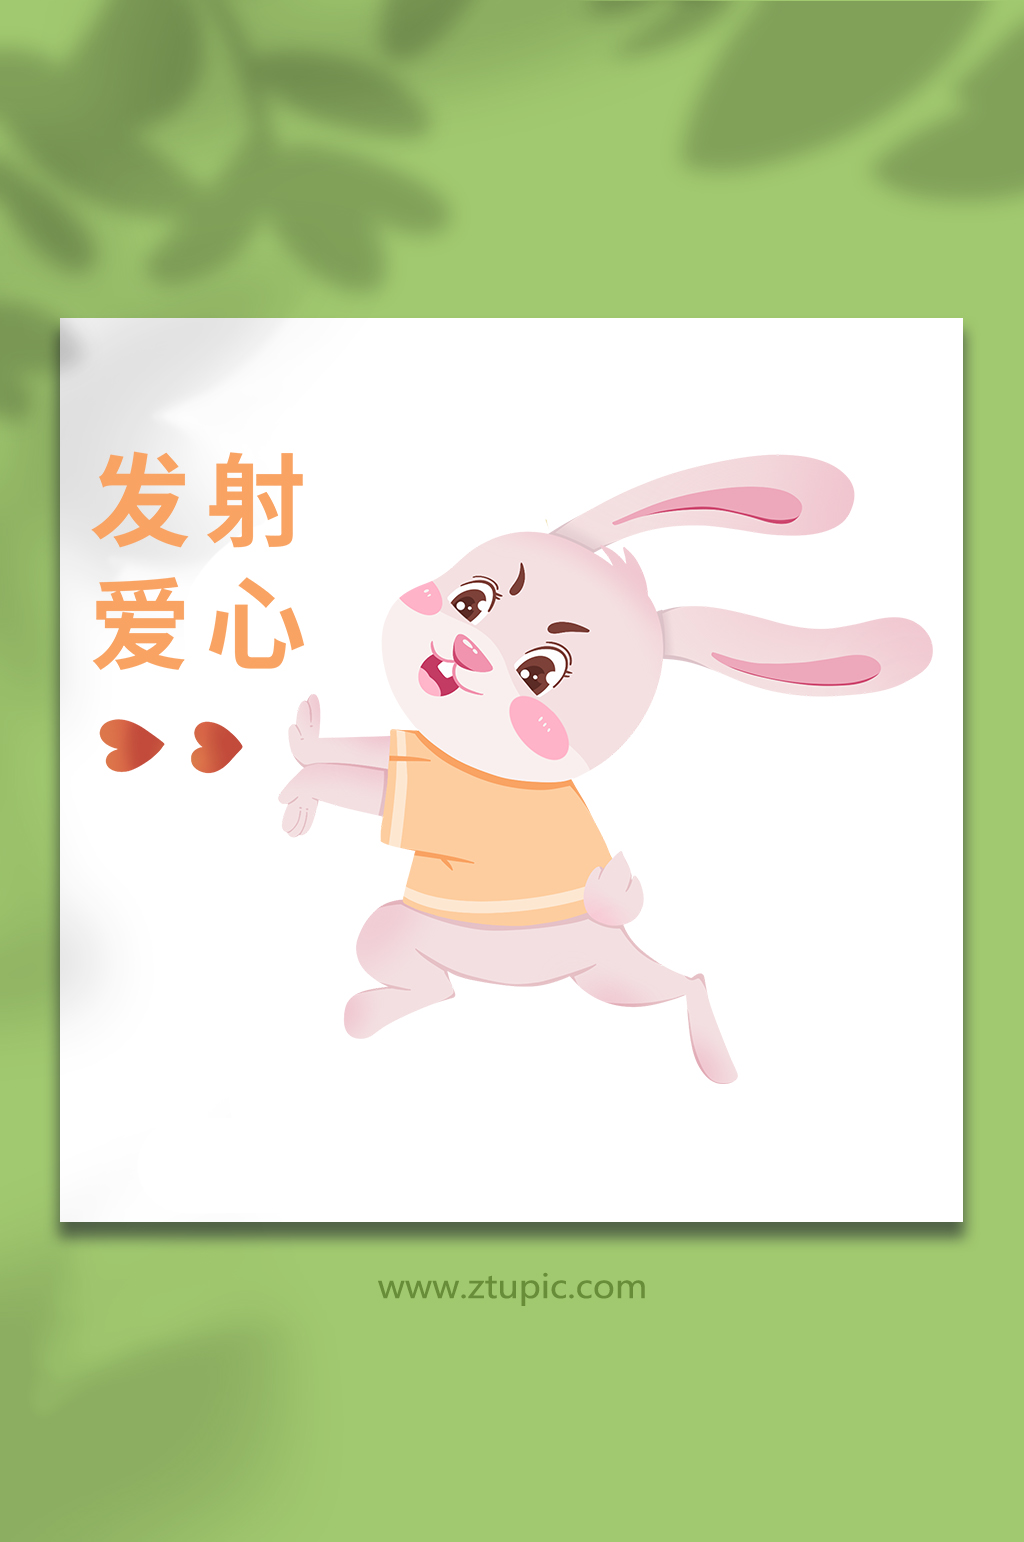 发射爱心兔年动物系列动作表情包元素插画